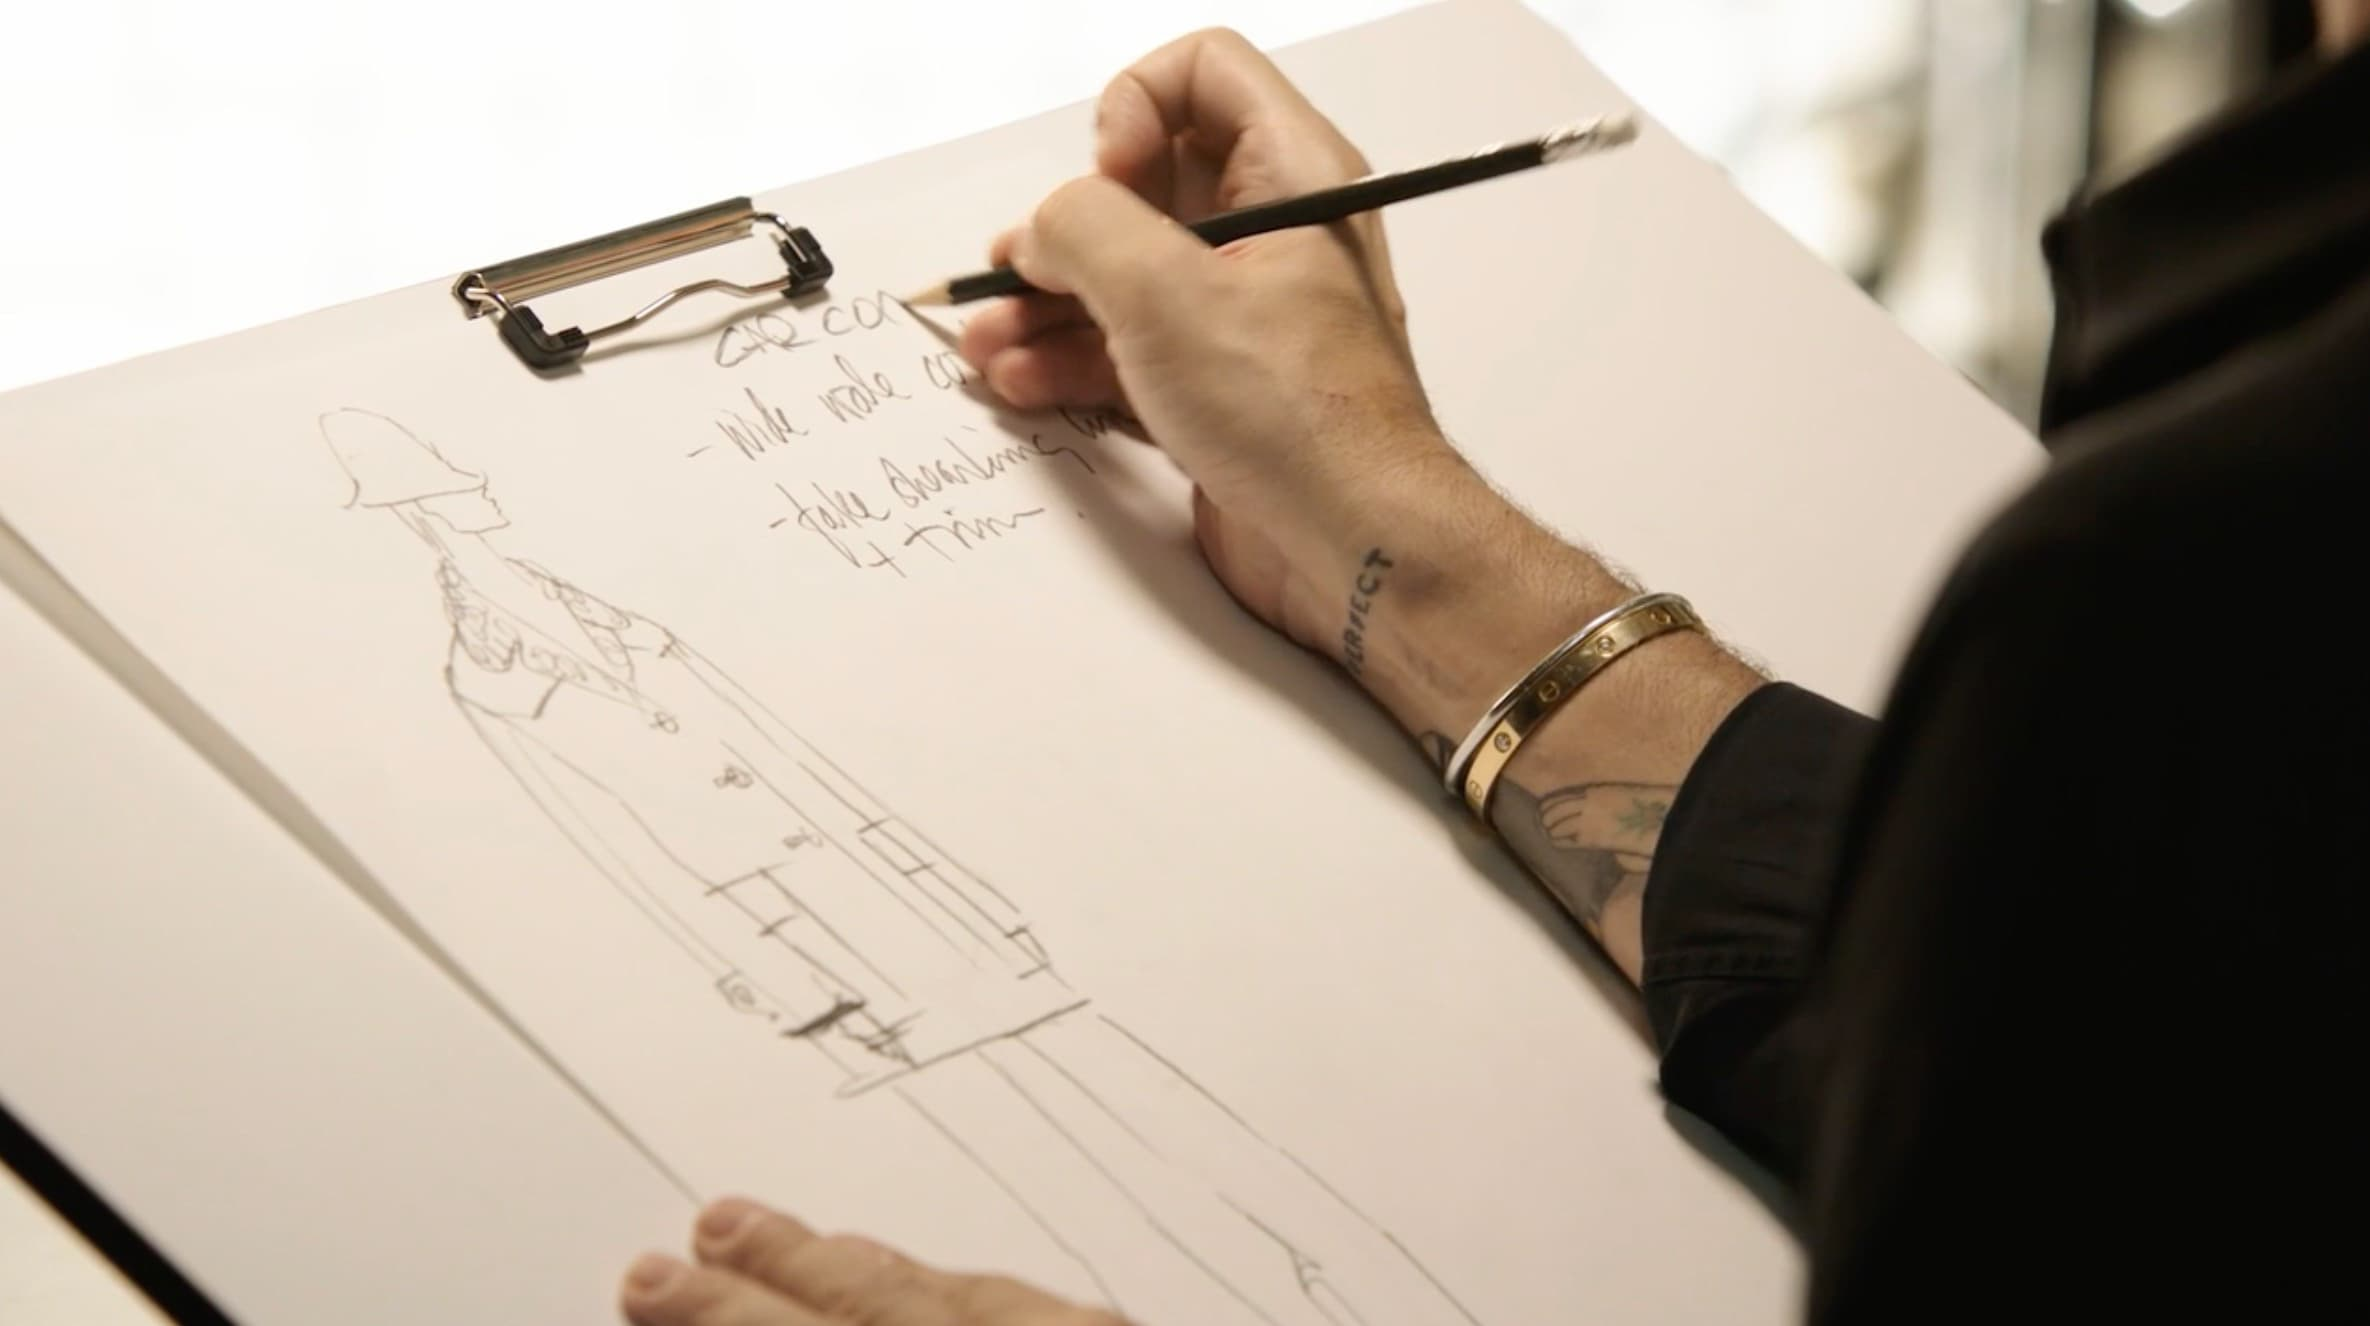 Marc Jacobs Masterclass - teaching details art